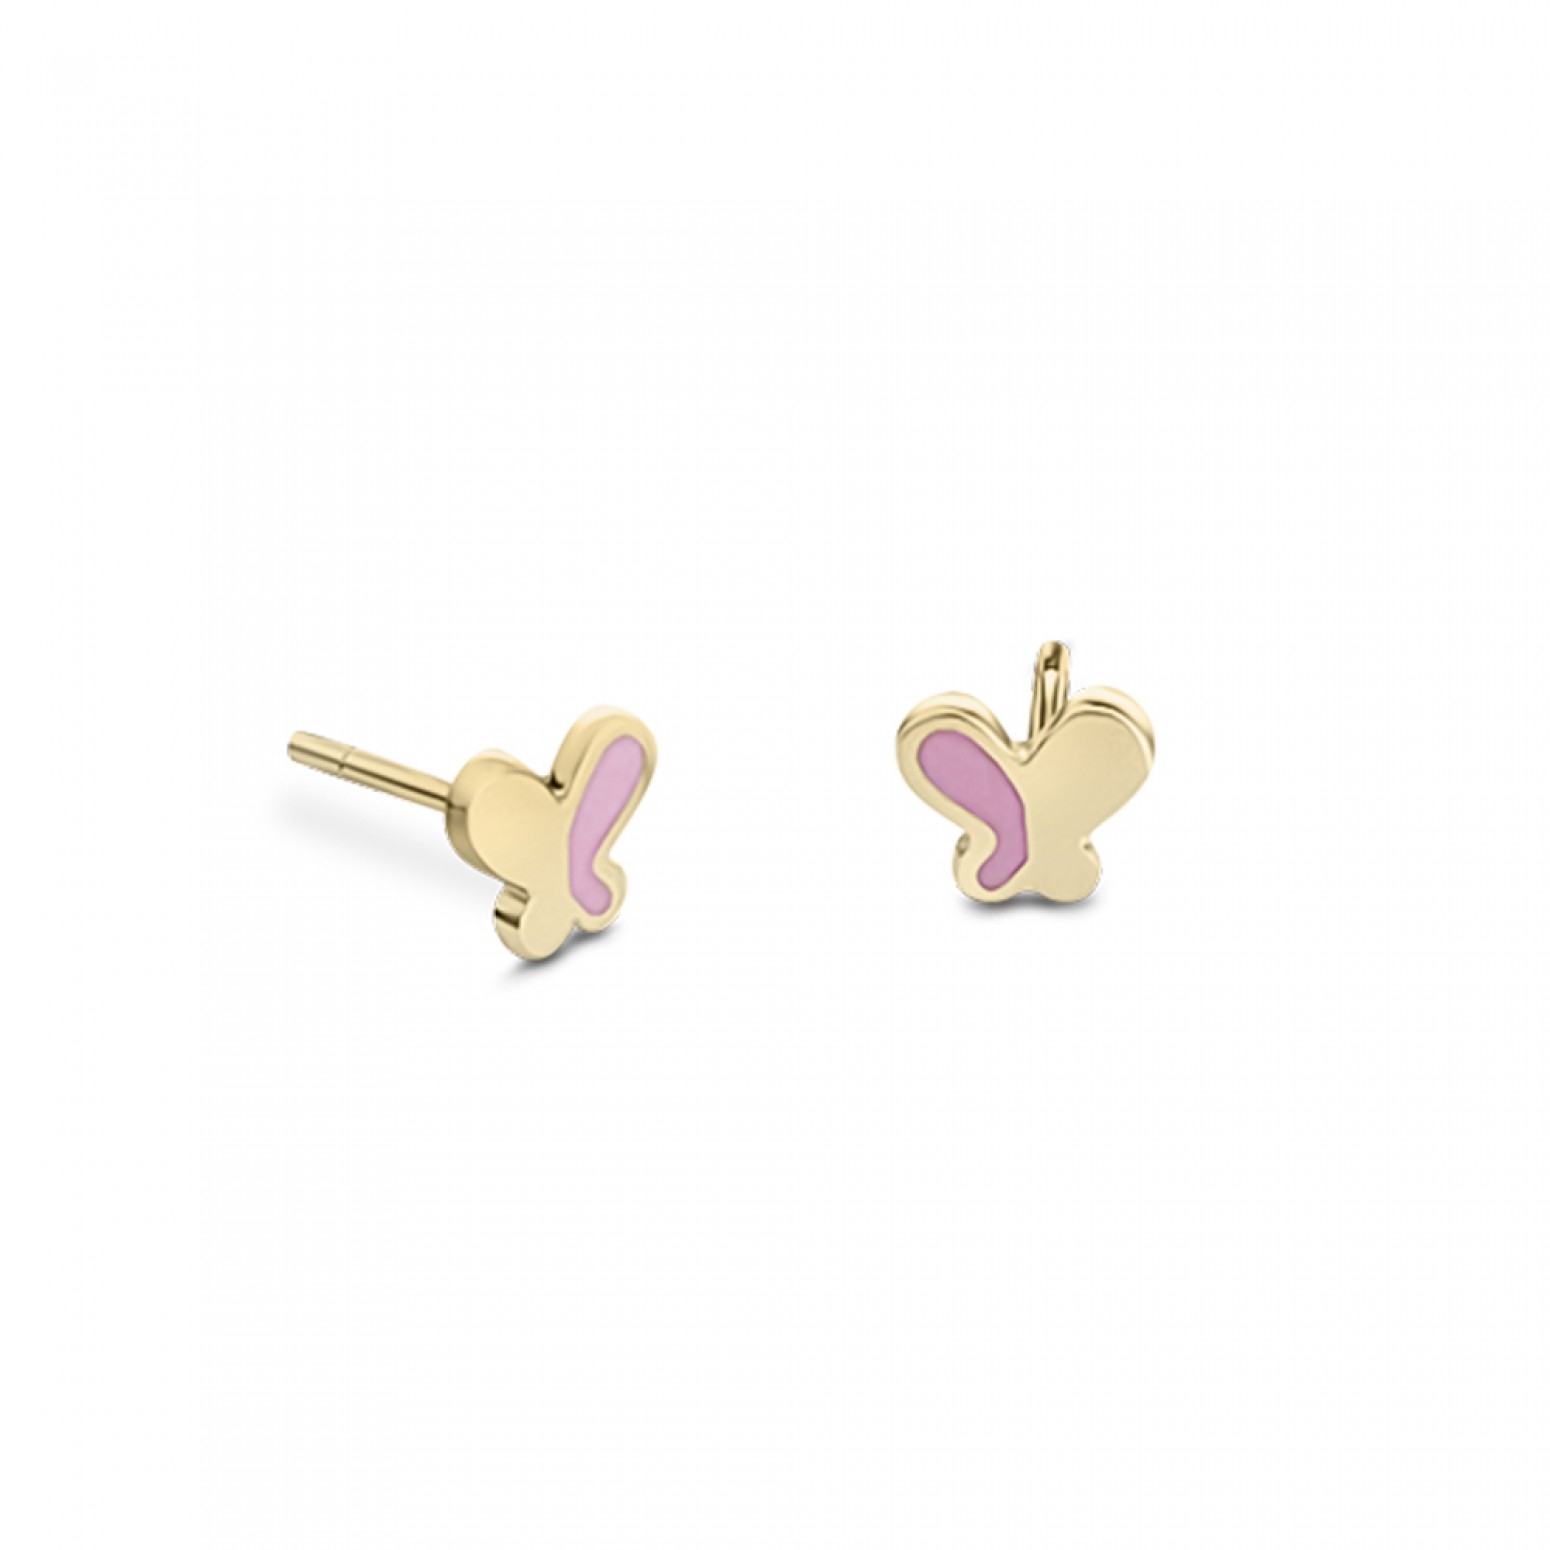 Butterfly baby earrings K9 gold with enamel, ps0082 EARRINGS Κοσμηματα - chrilia.gr